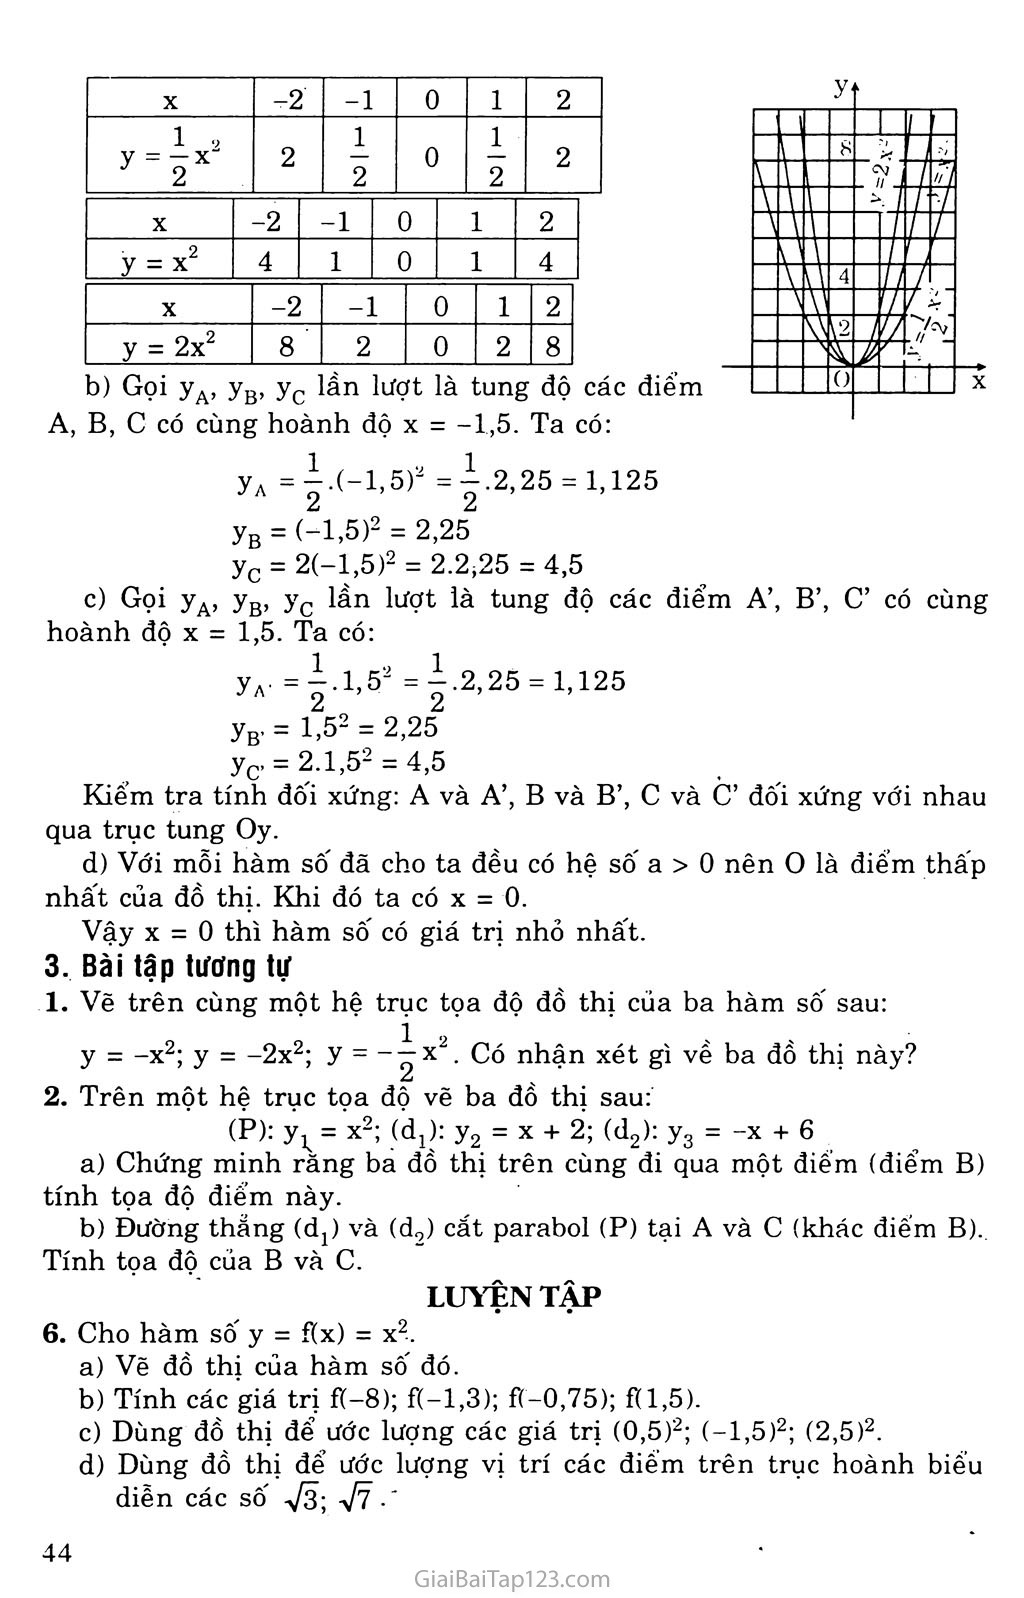 Bài 2. Đồ thị hàm số y = ax2 (a khác 0) trang 3